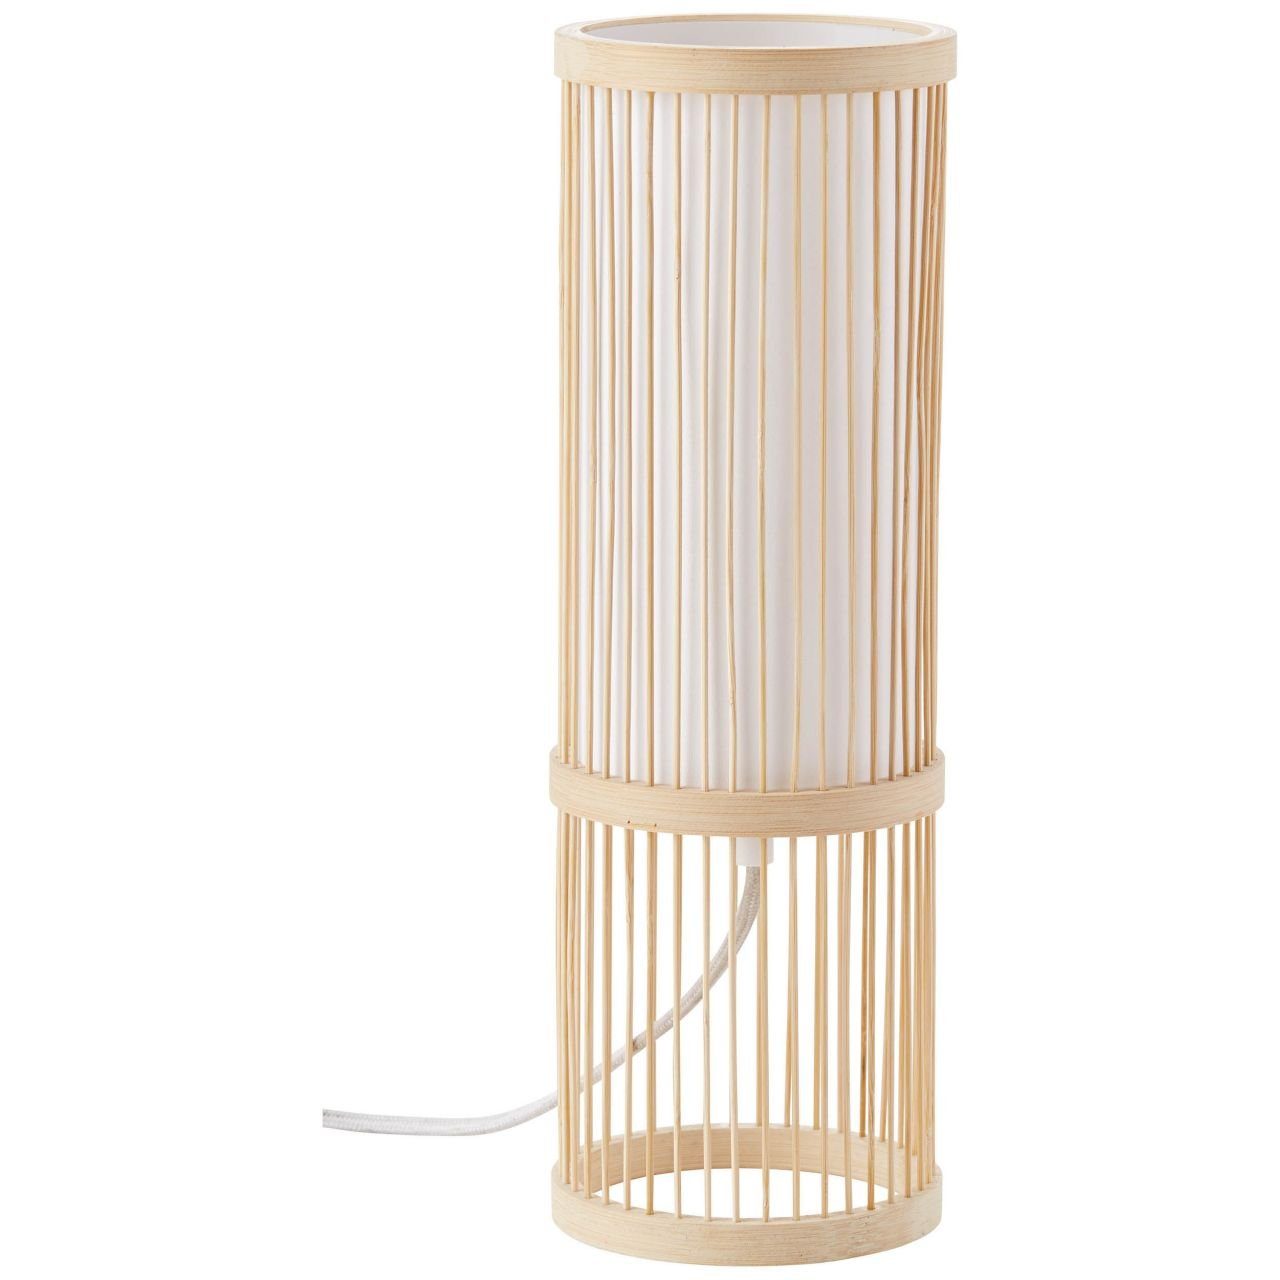 Brilliant Normallamp Nori, 40W, E27, Nori Lampe g.f. Tischleuchte 1x A60, Tischleuchte natur/weiß